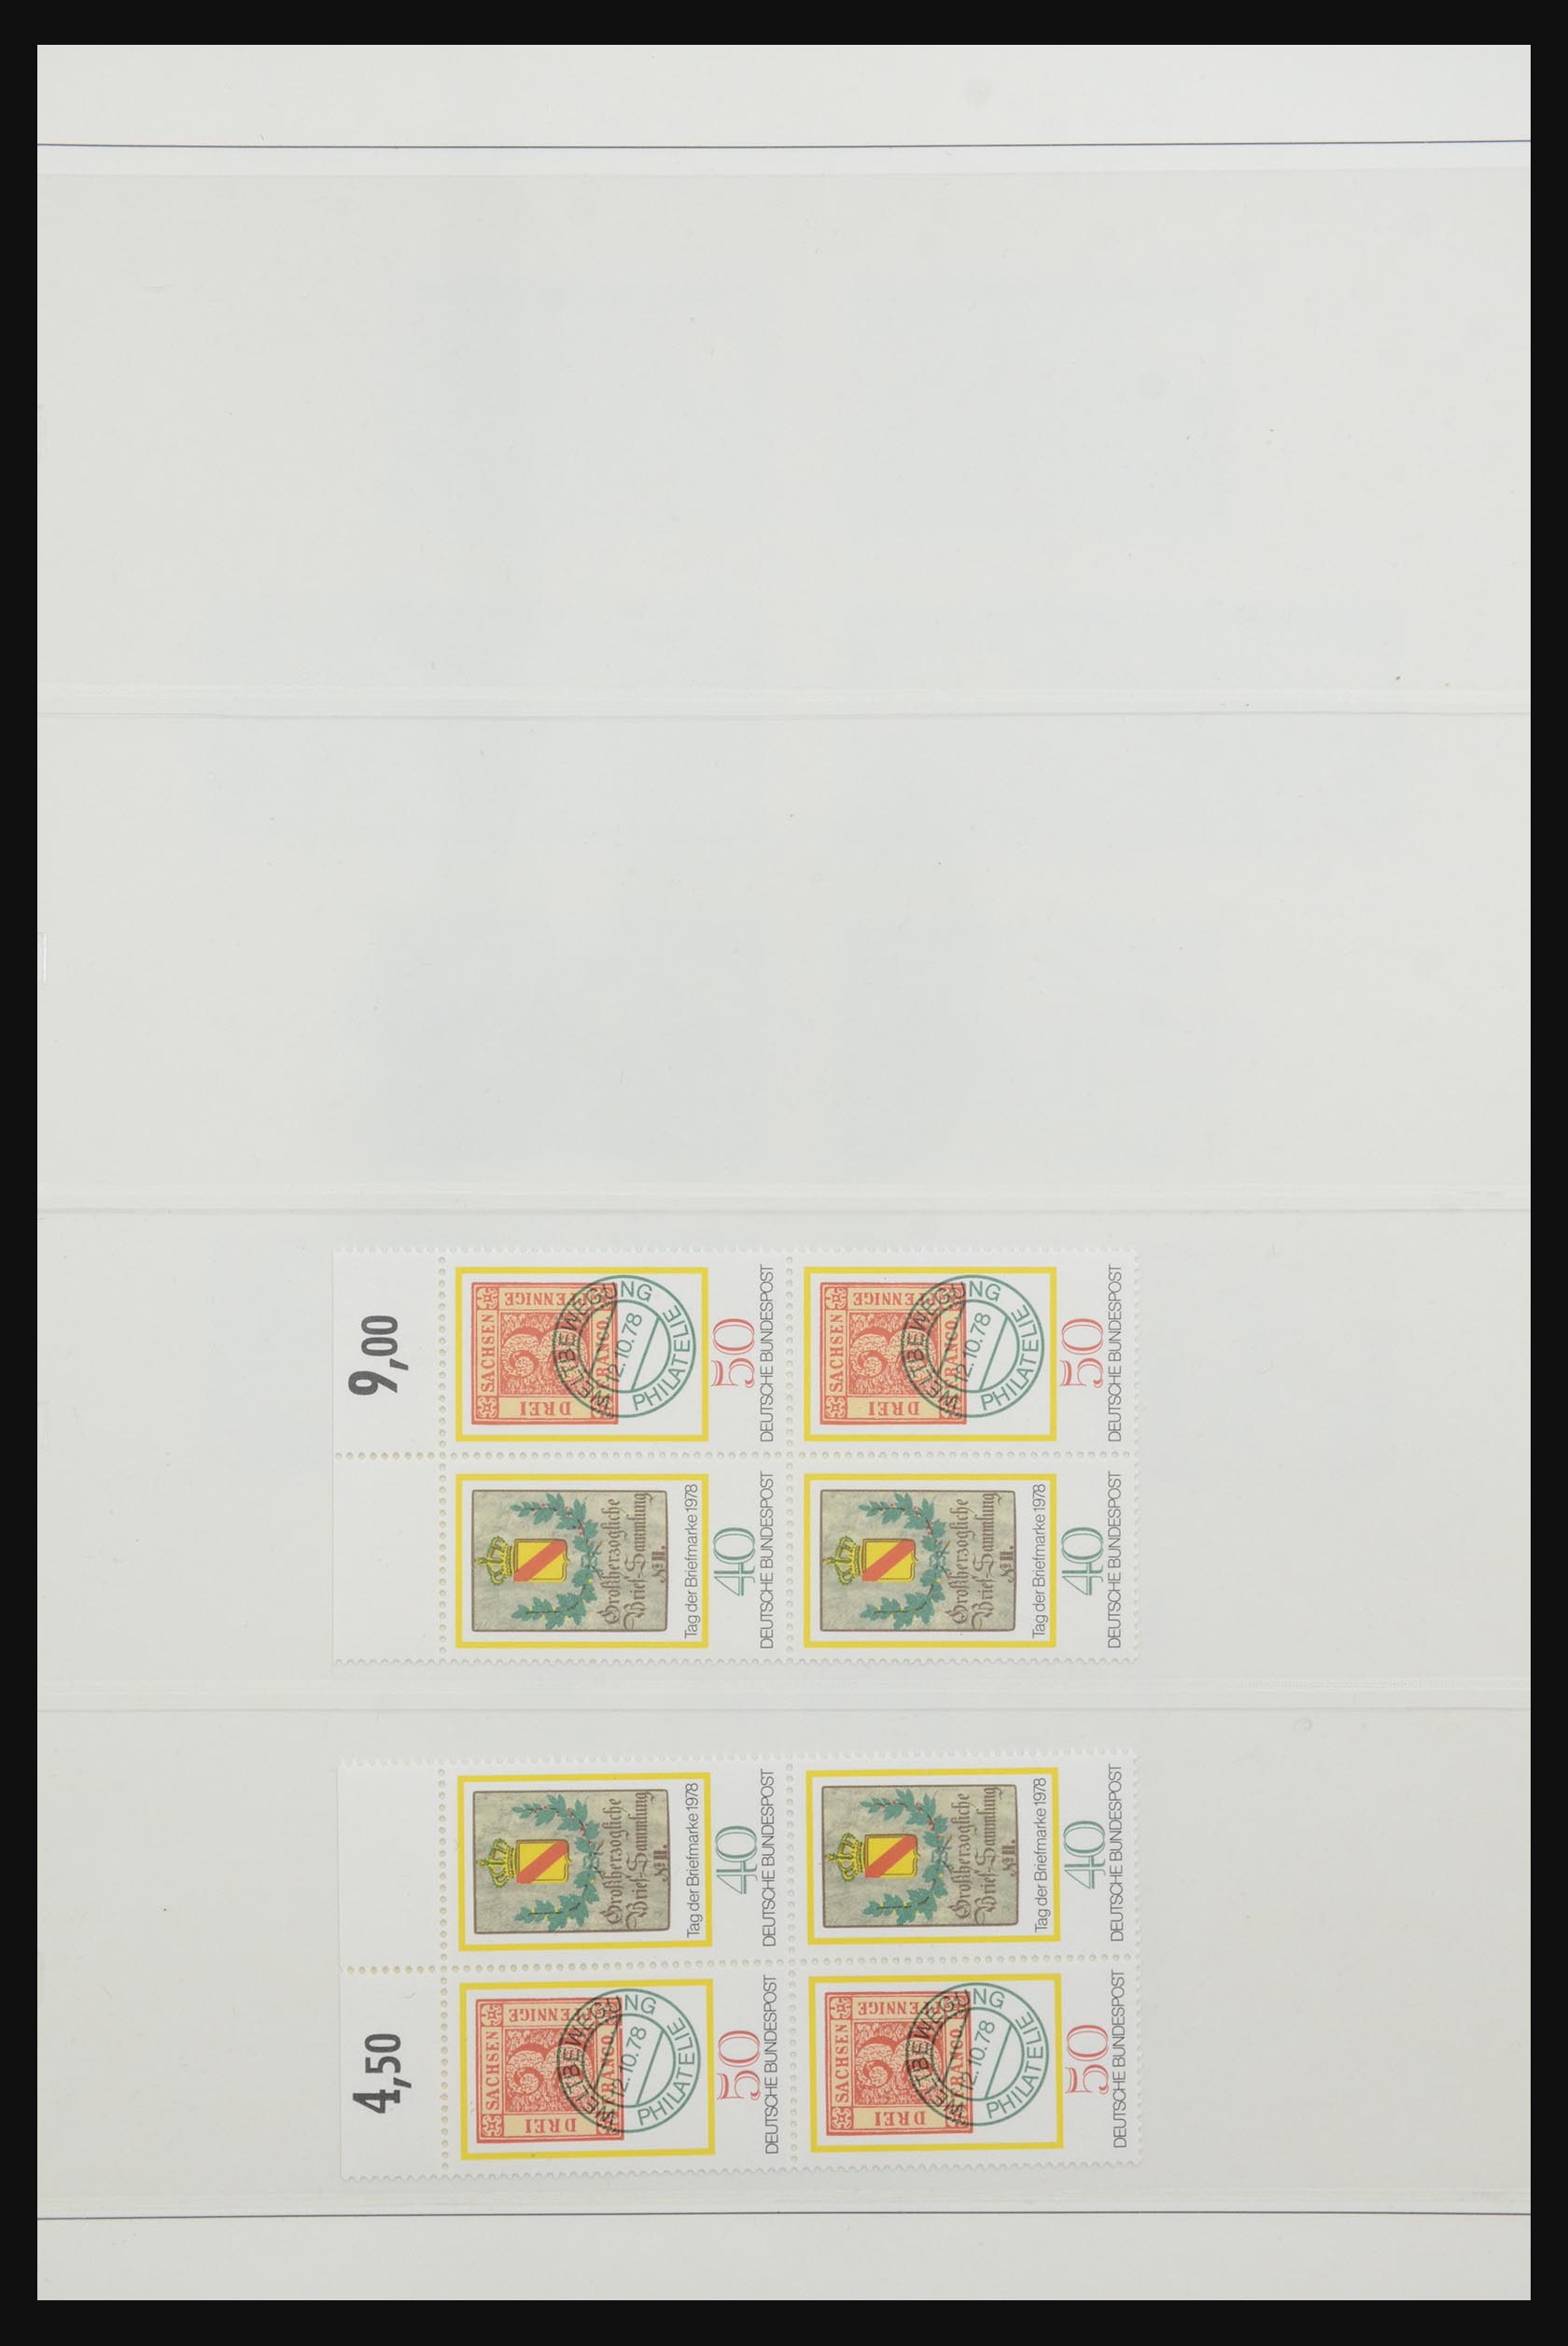 31842 060 - 31842 Bundespost combinaties 1951-2003.